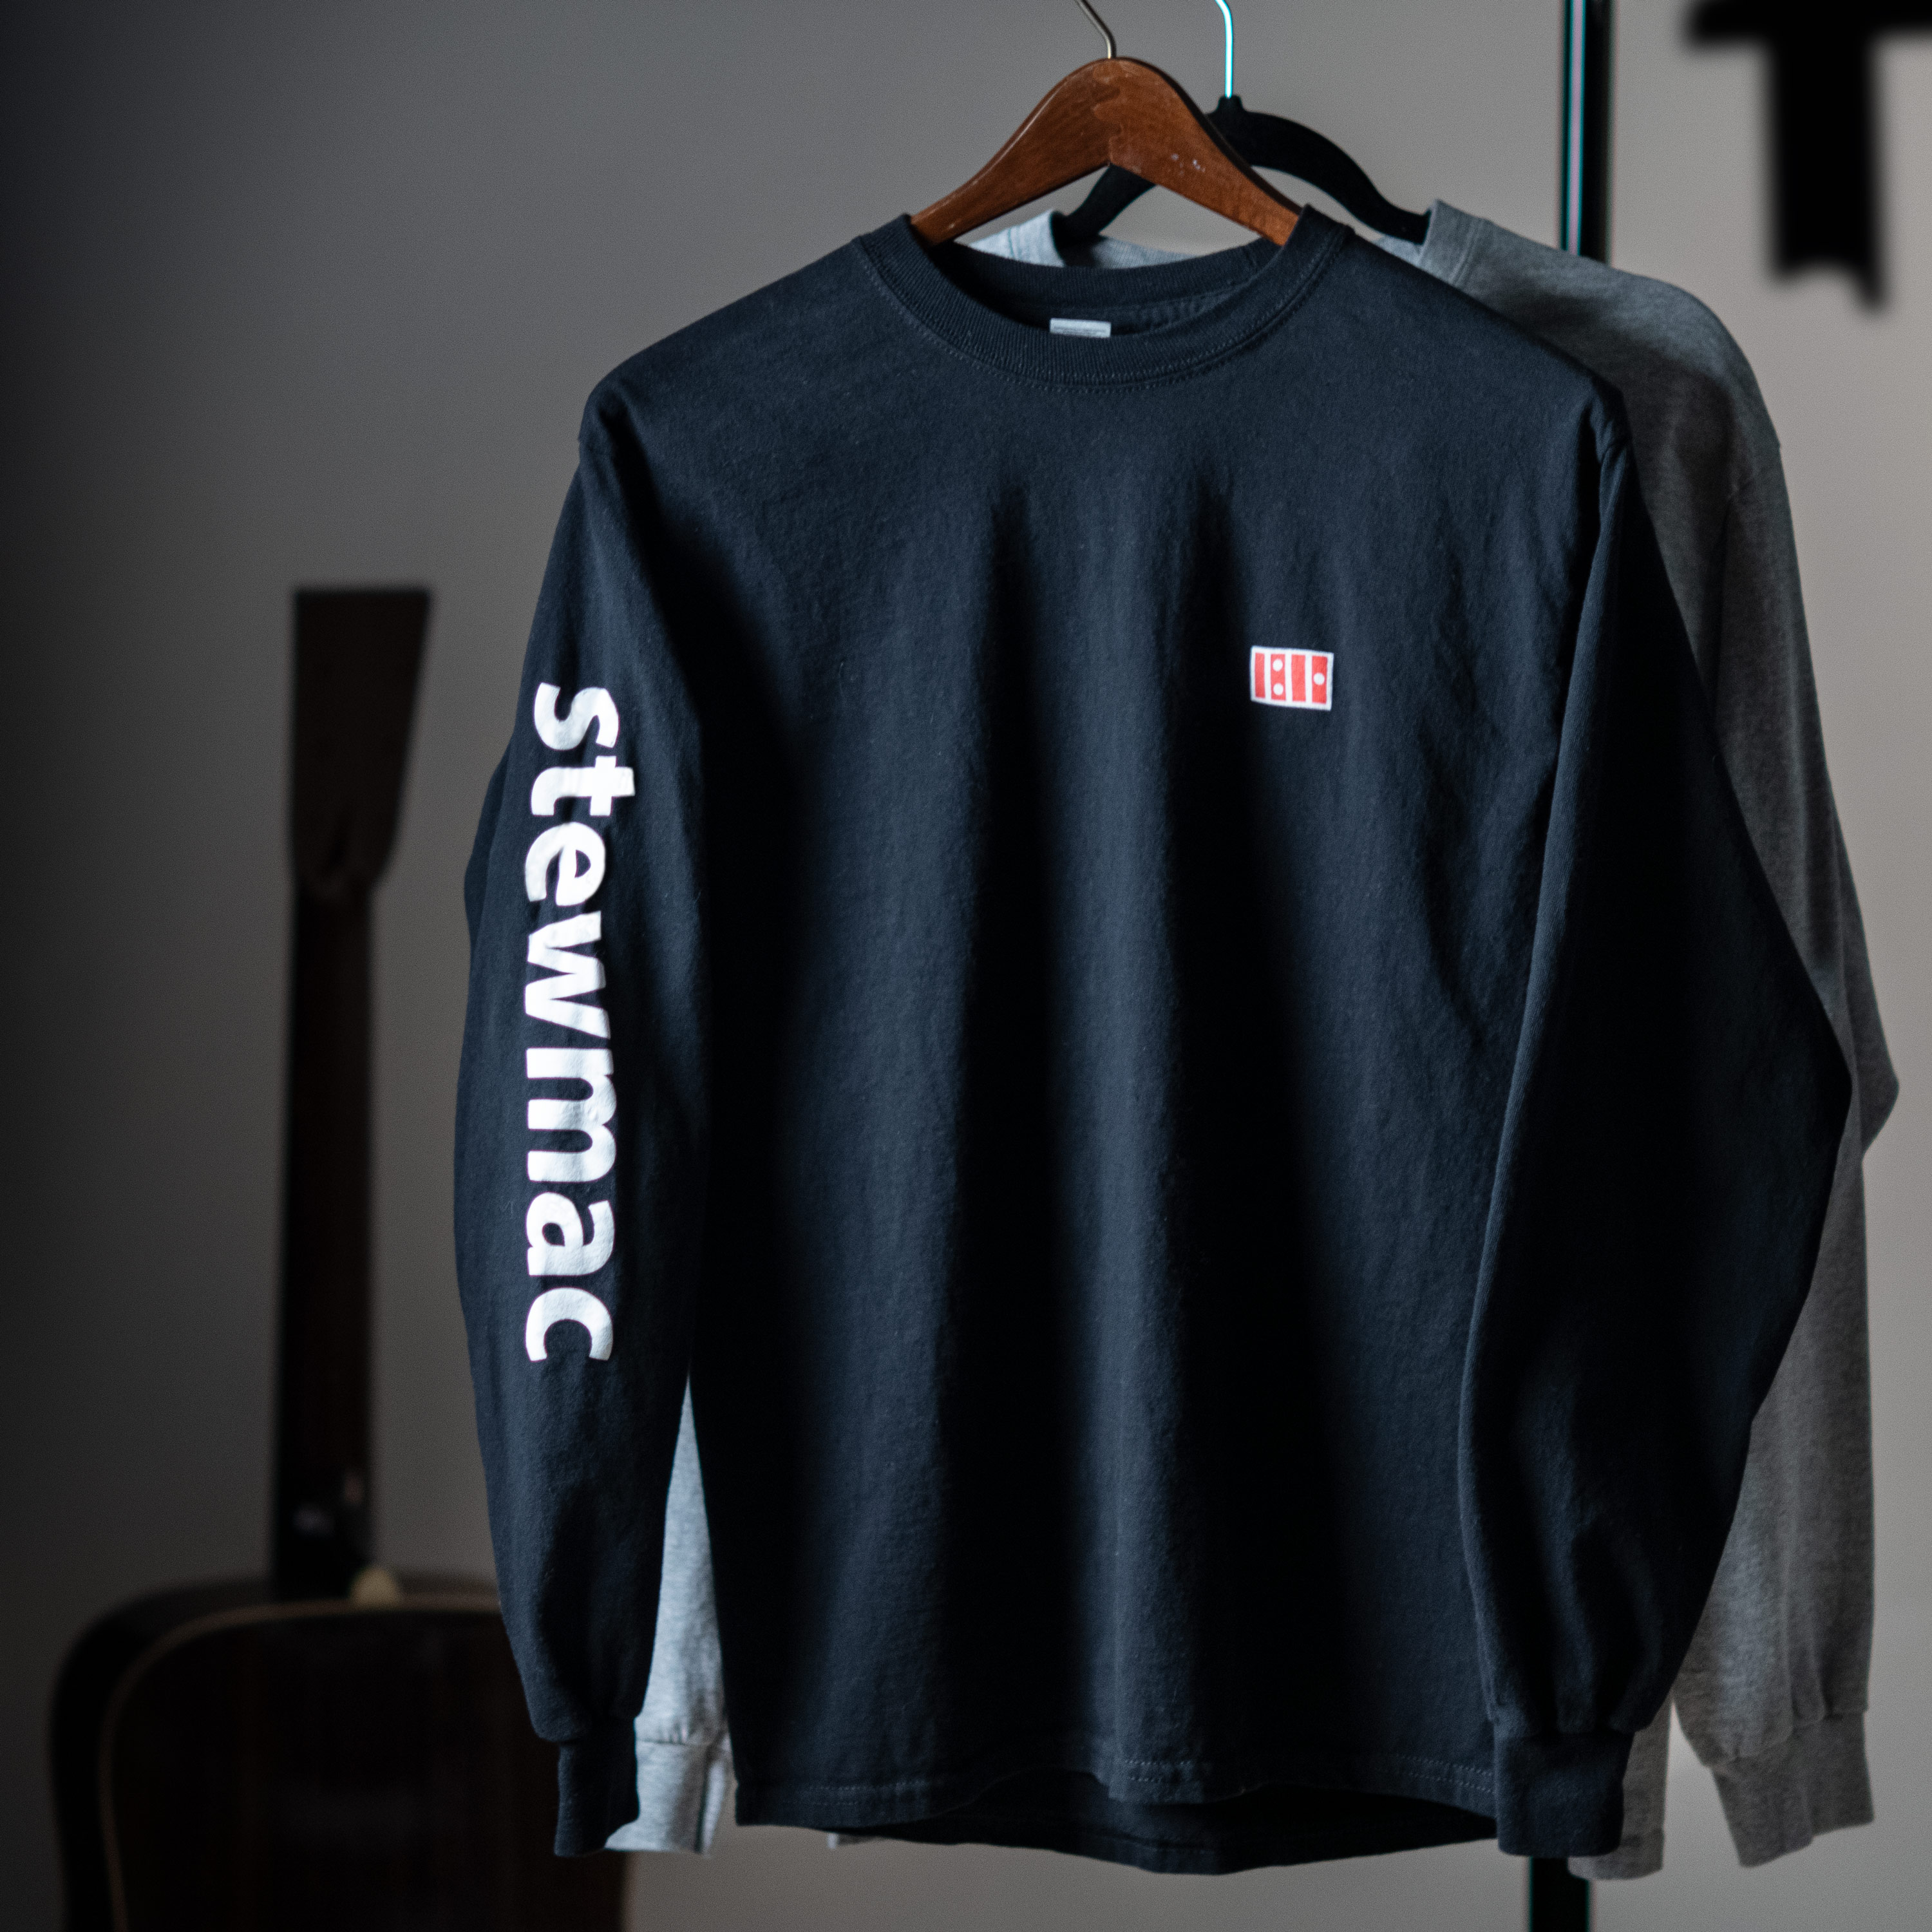 StewMac Long Sleeve T-Shirt, Black